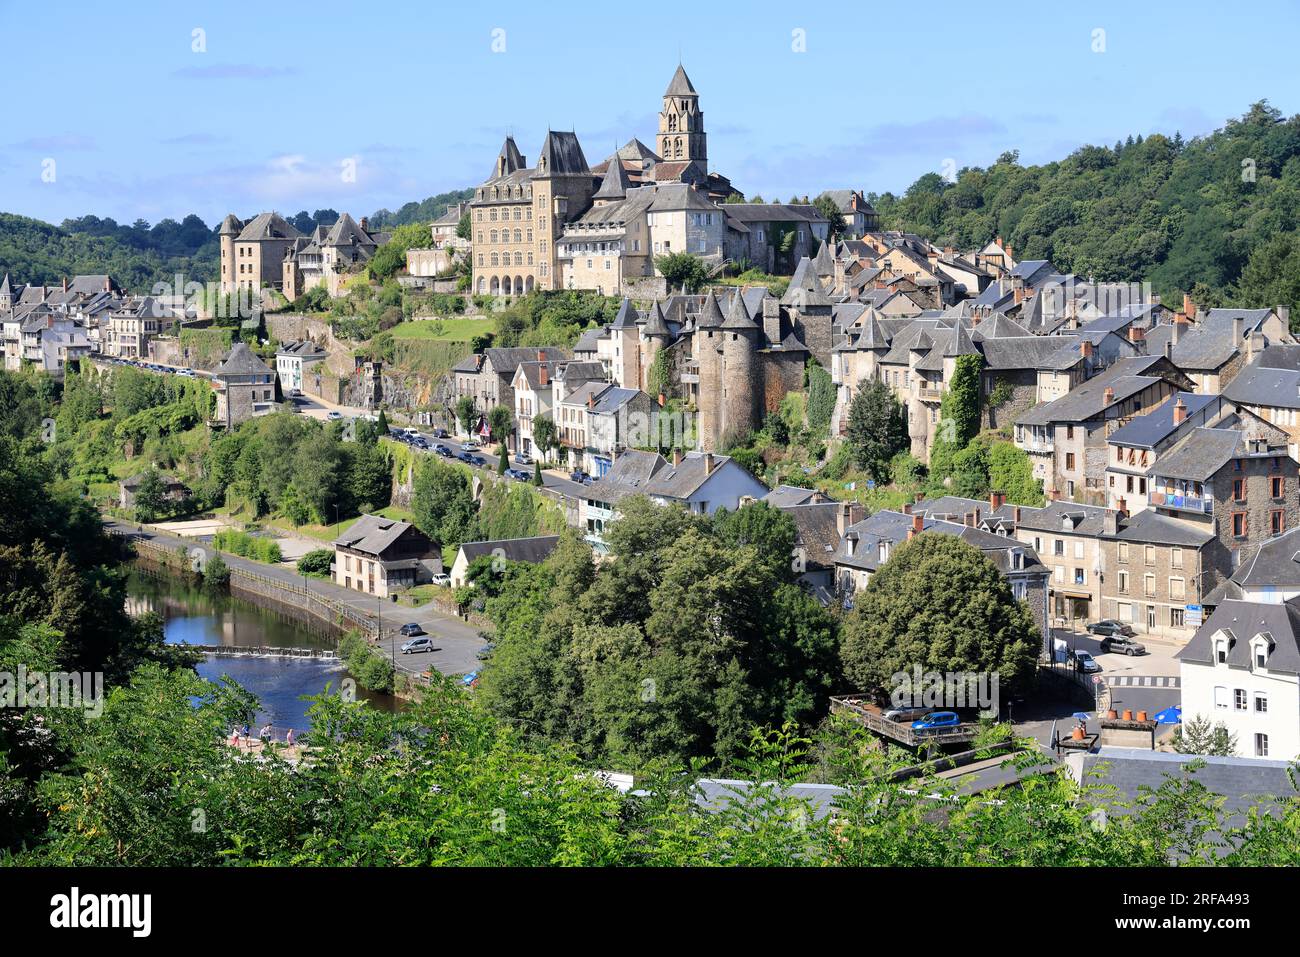 La petite ville pittoresque d’Uzerche dans la vallée de la Vézère en Corrèze dans le Limousin en France Foto Stock